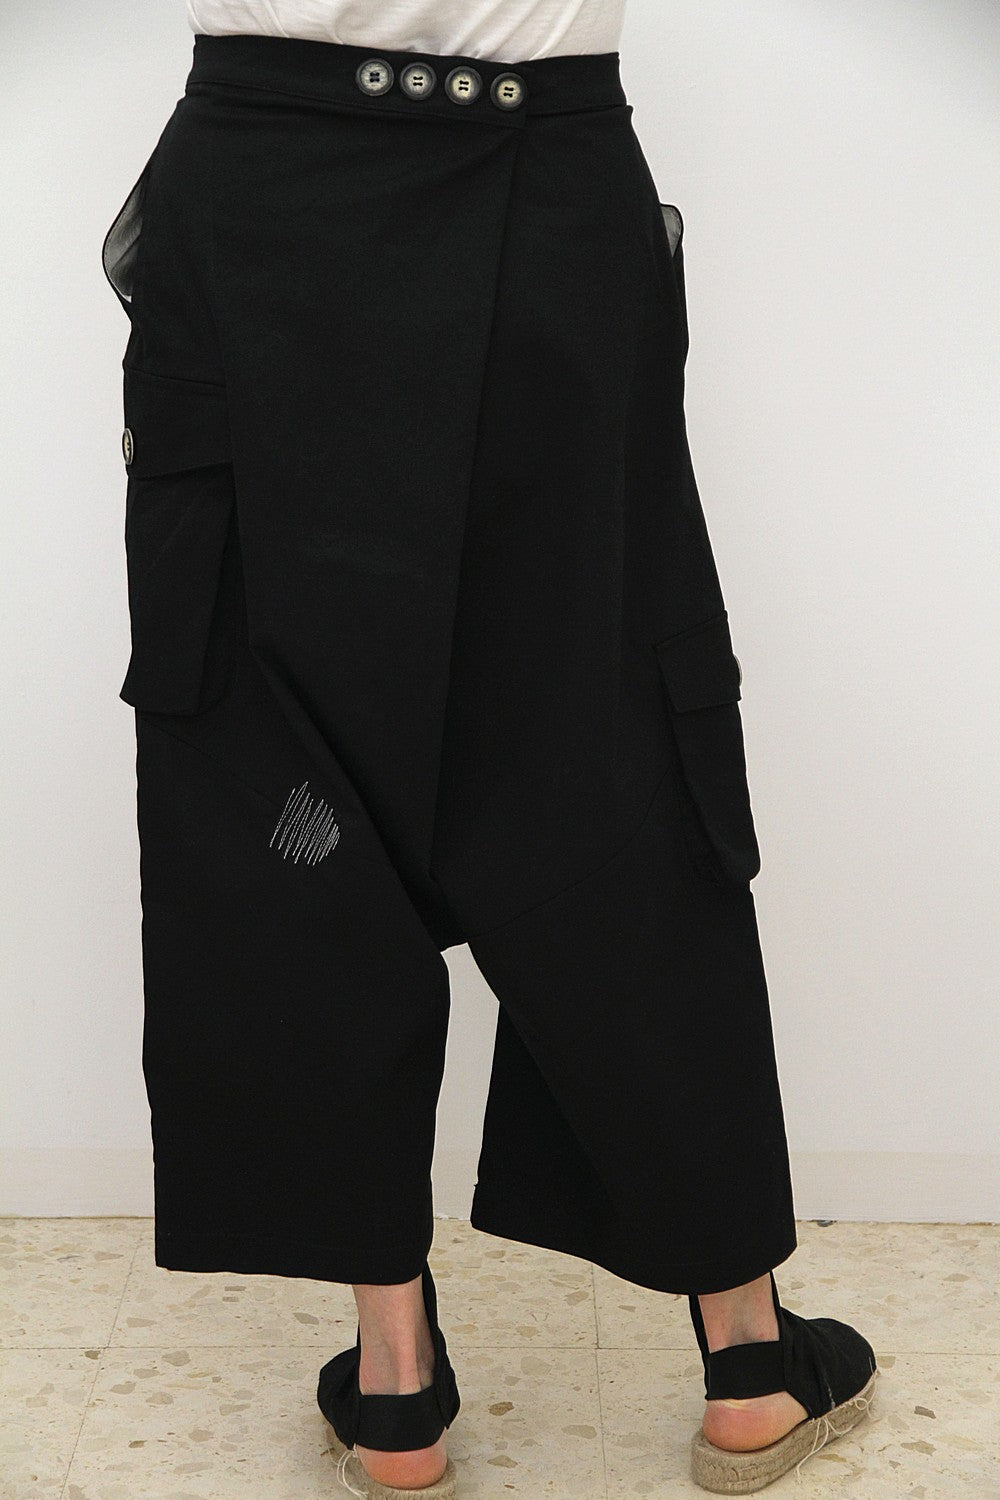 Suit Chalino black unisex